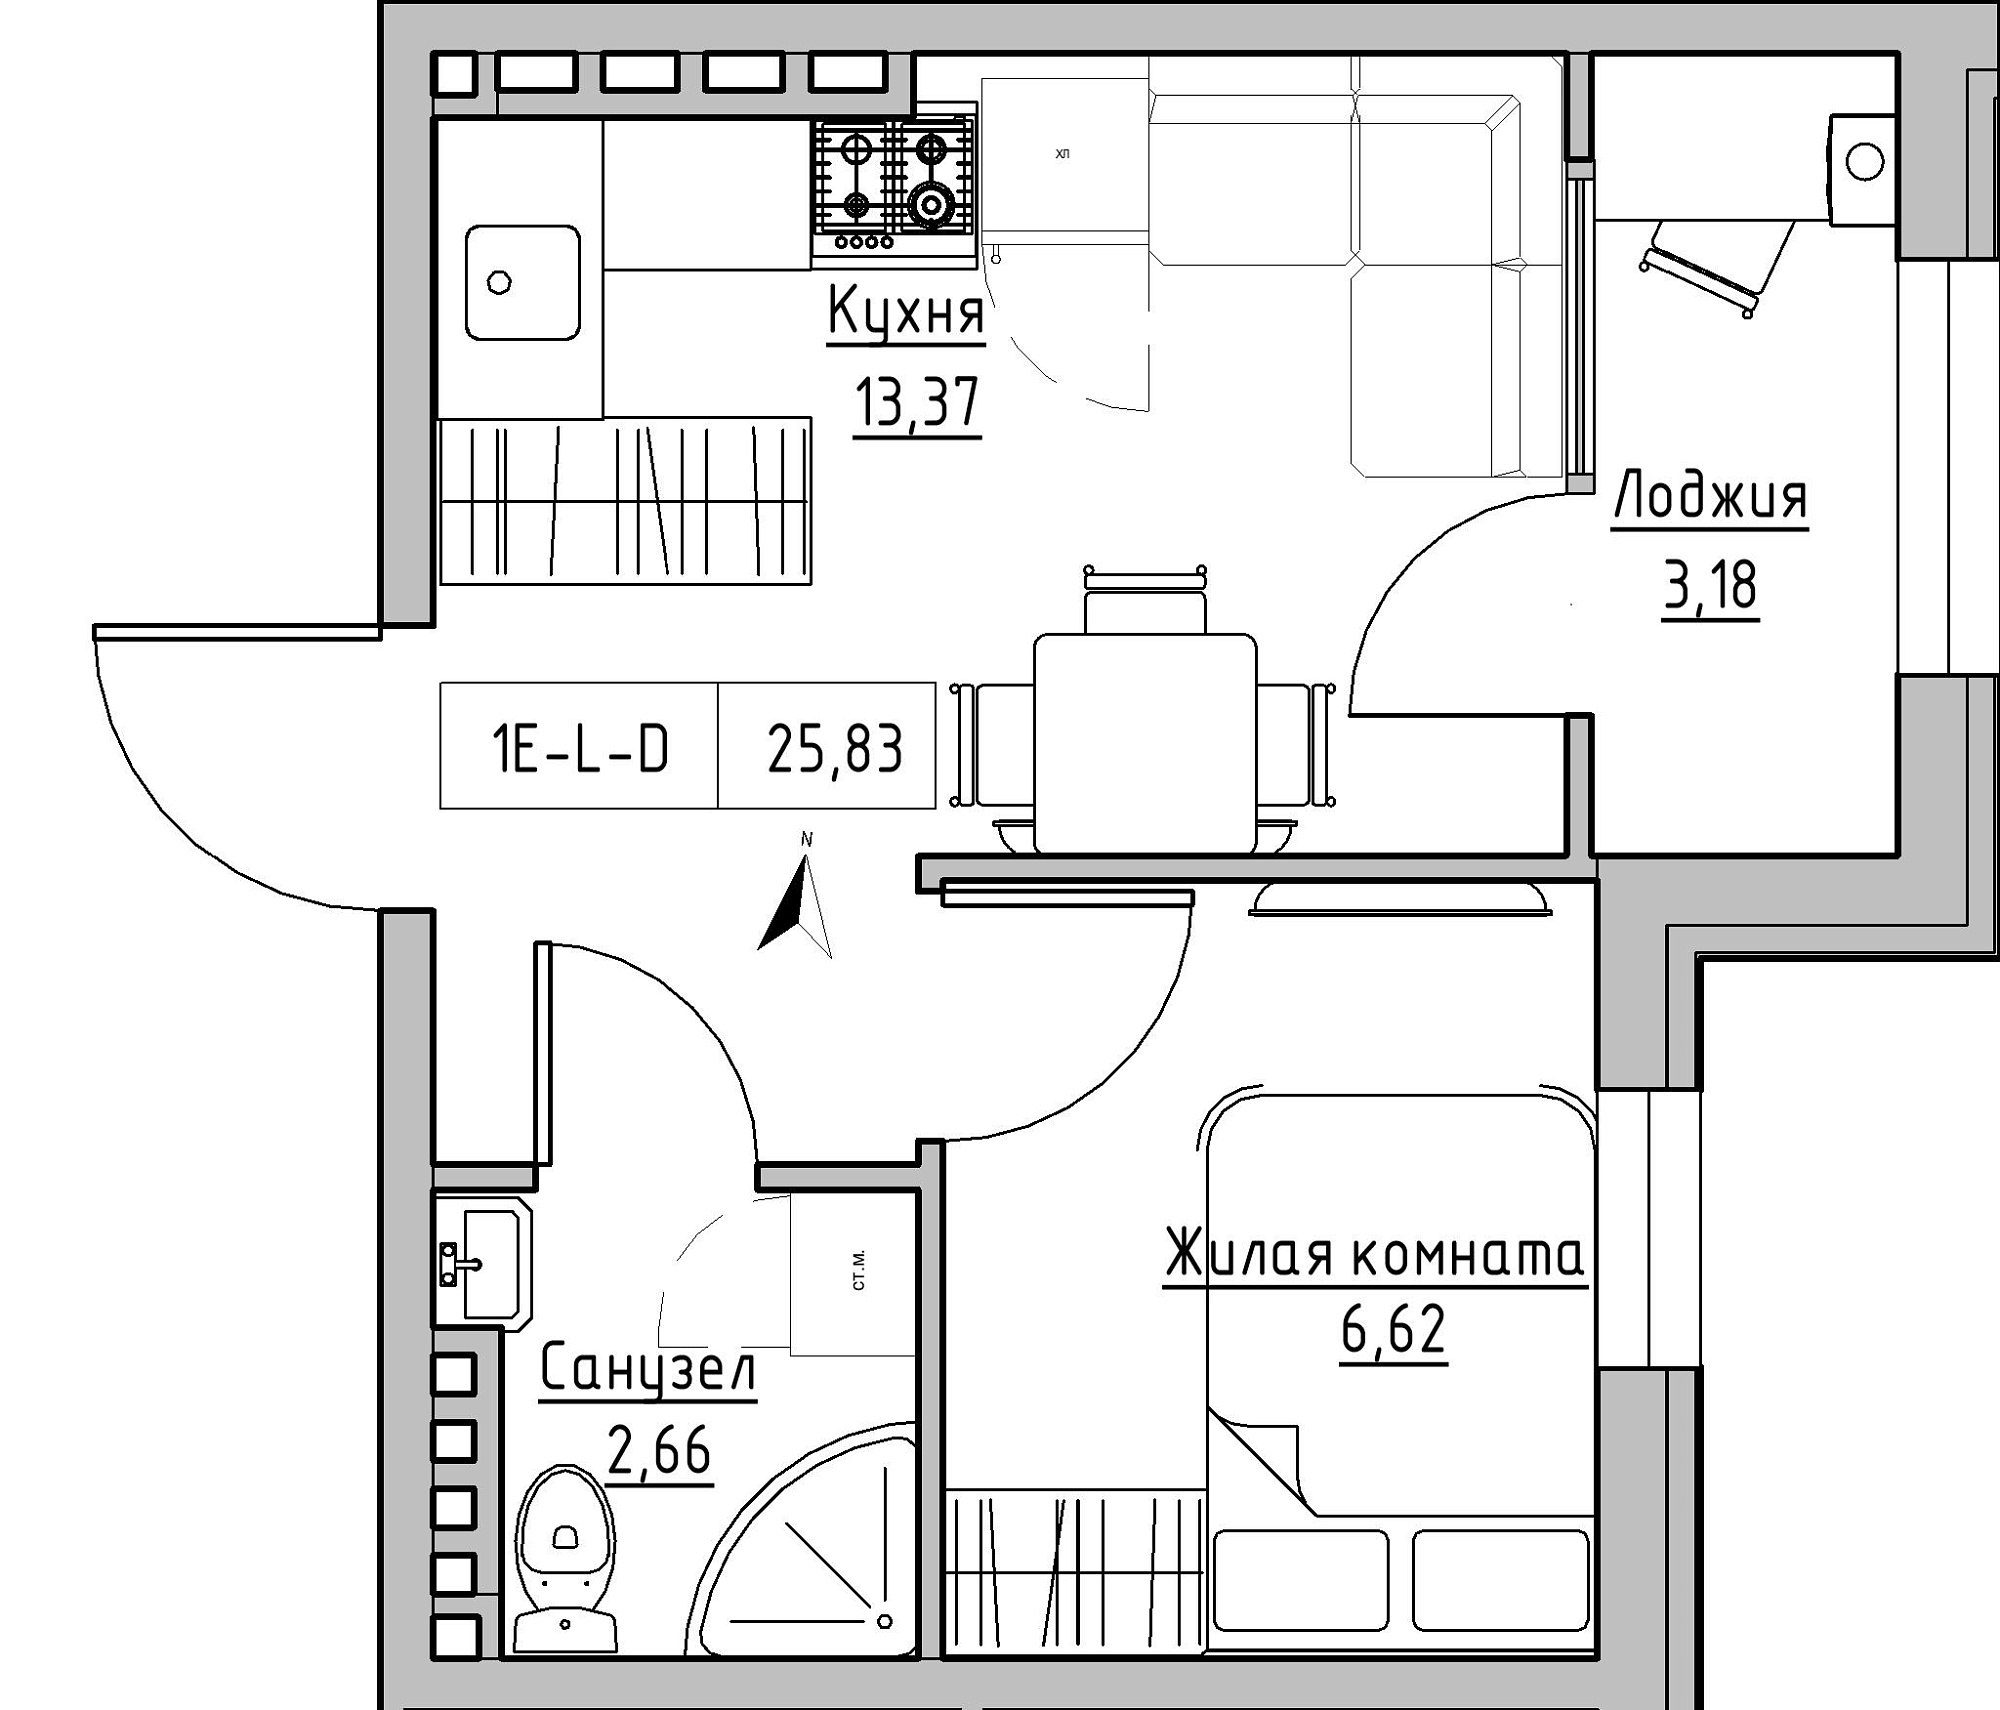 Планировка 1-к квартира площей 25.83м2, KS-024-04/0017.